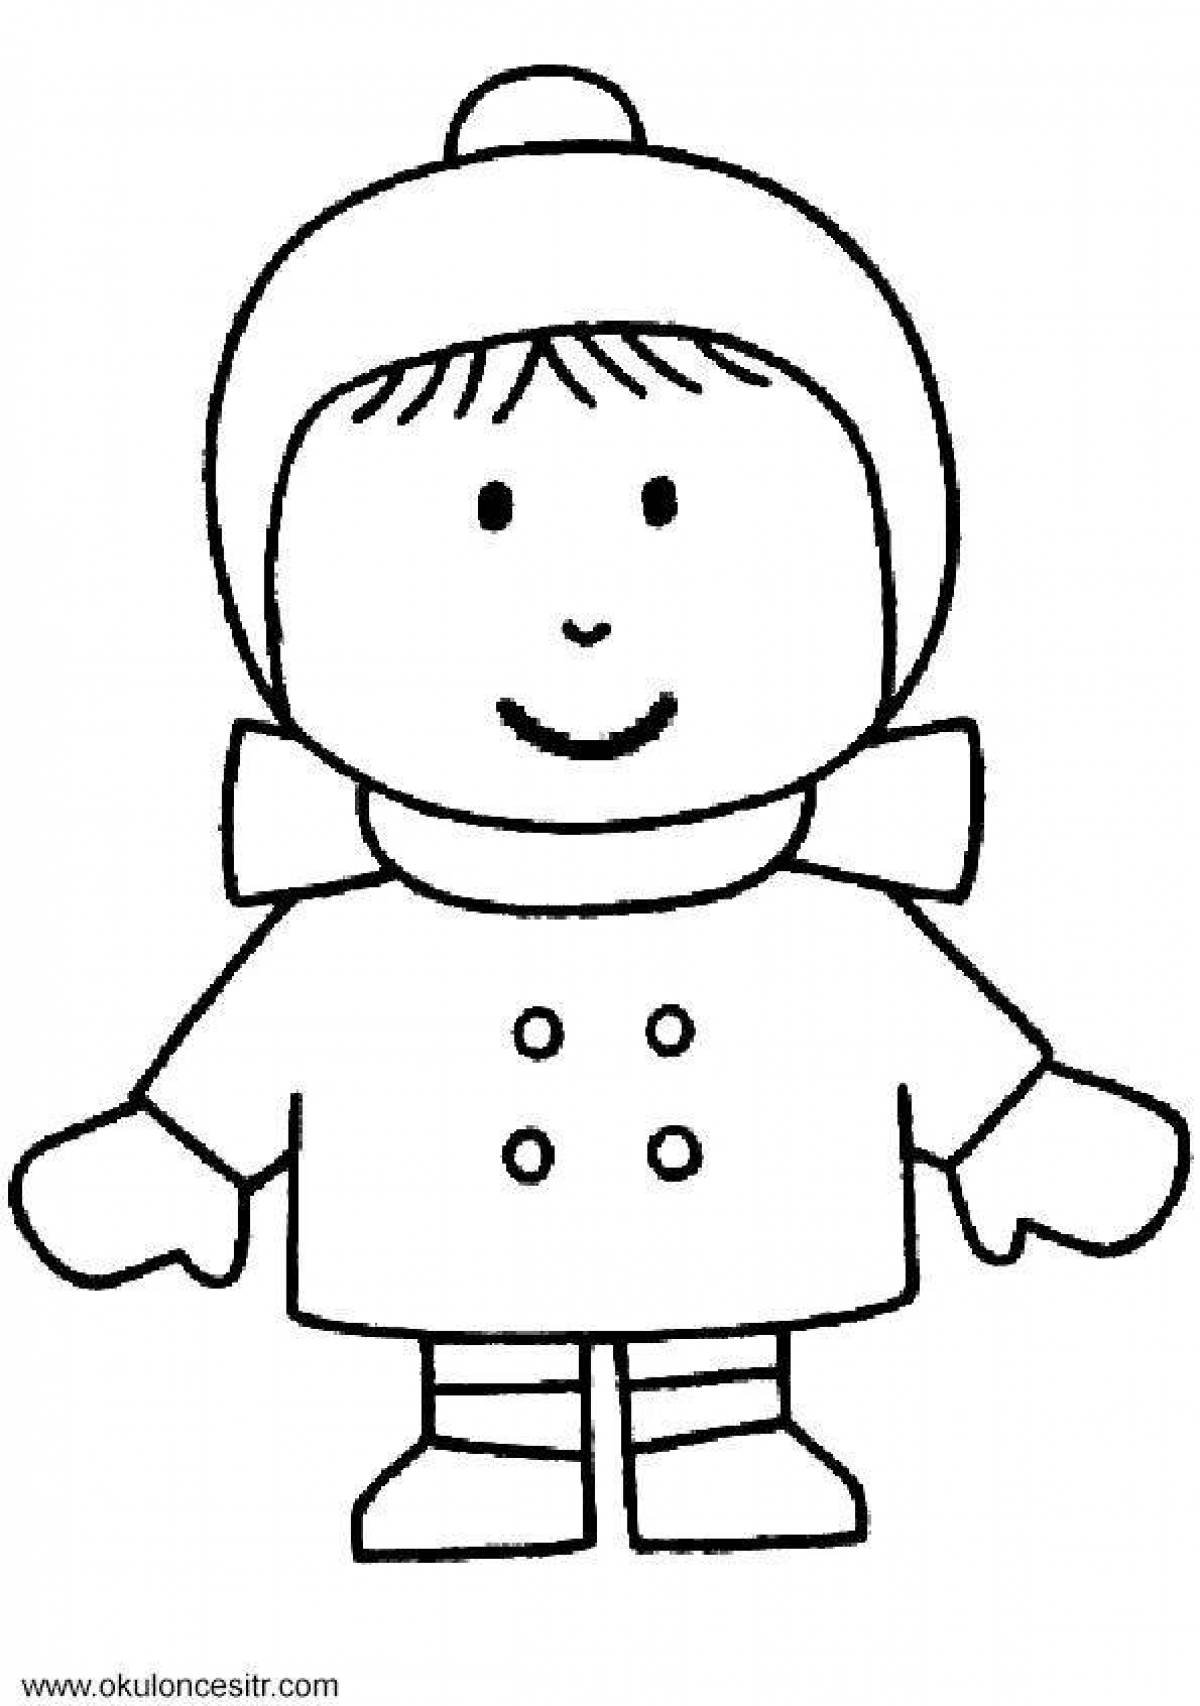 Cozy coloring book boy in winter clothes